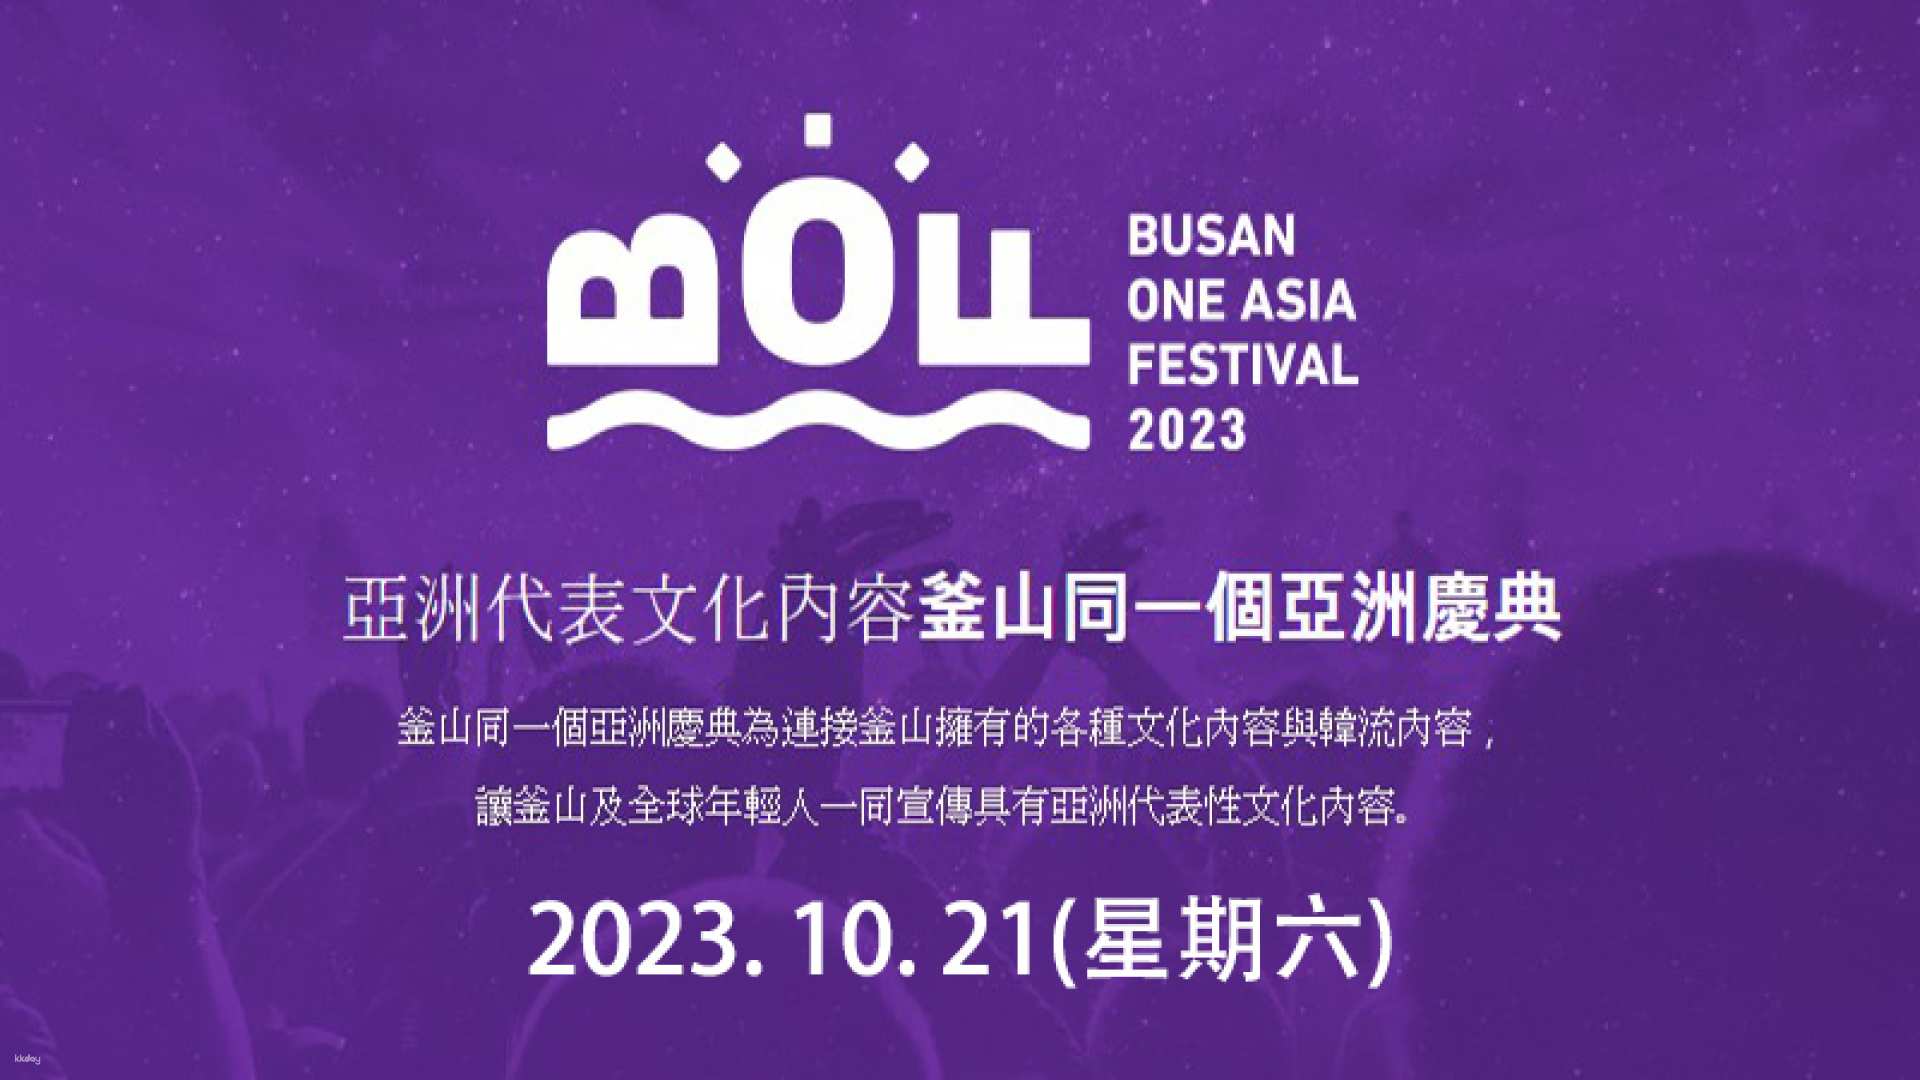 韓國-2024釜山亞洲文化節(BOF)|一日遊或兩日遊或城市觀光巴士可選| K-POP音樂會